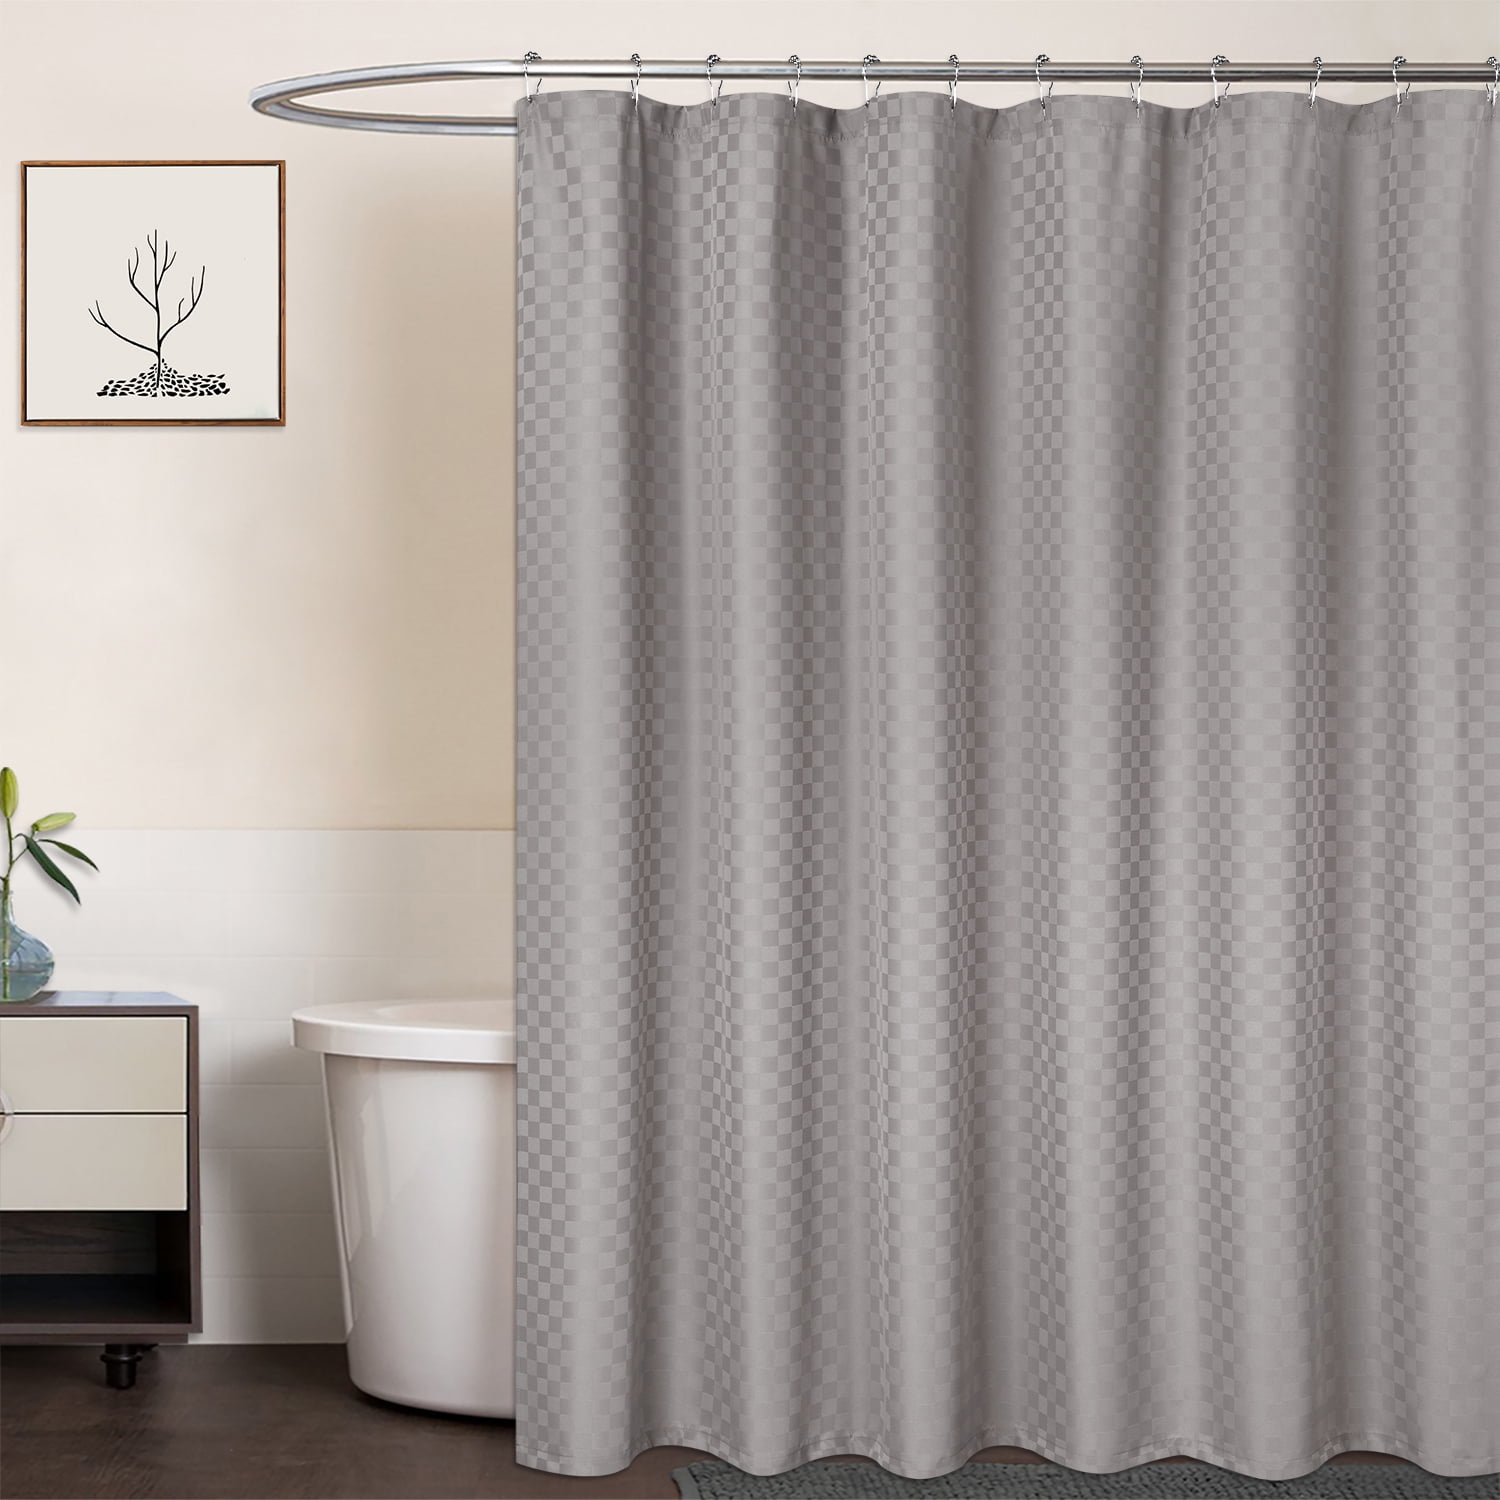 Louis vuitton shower curtains dark beige black full bathroom sets